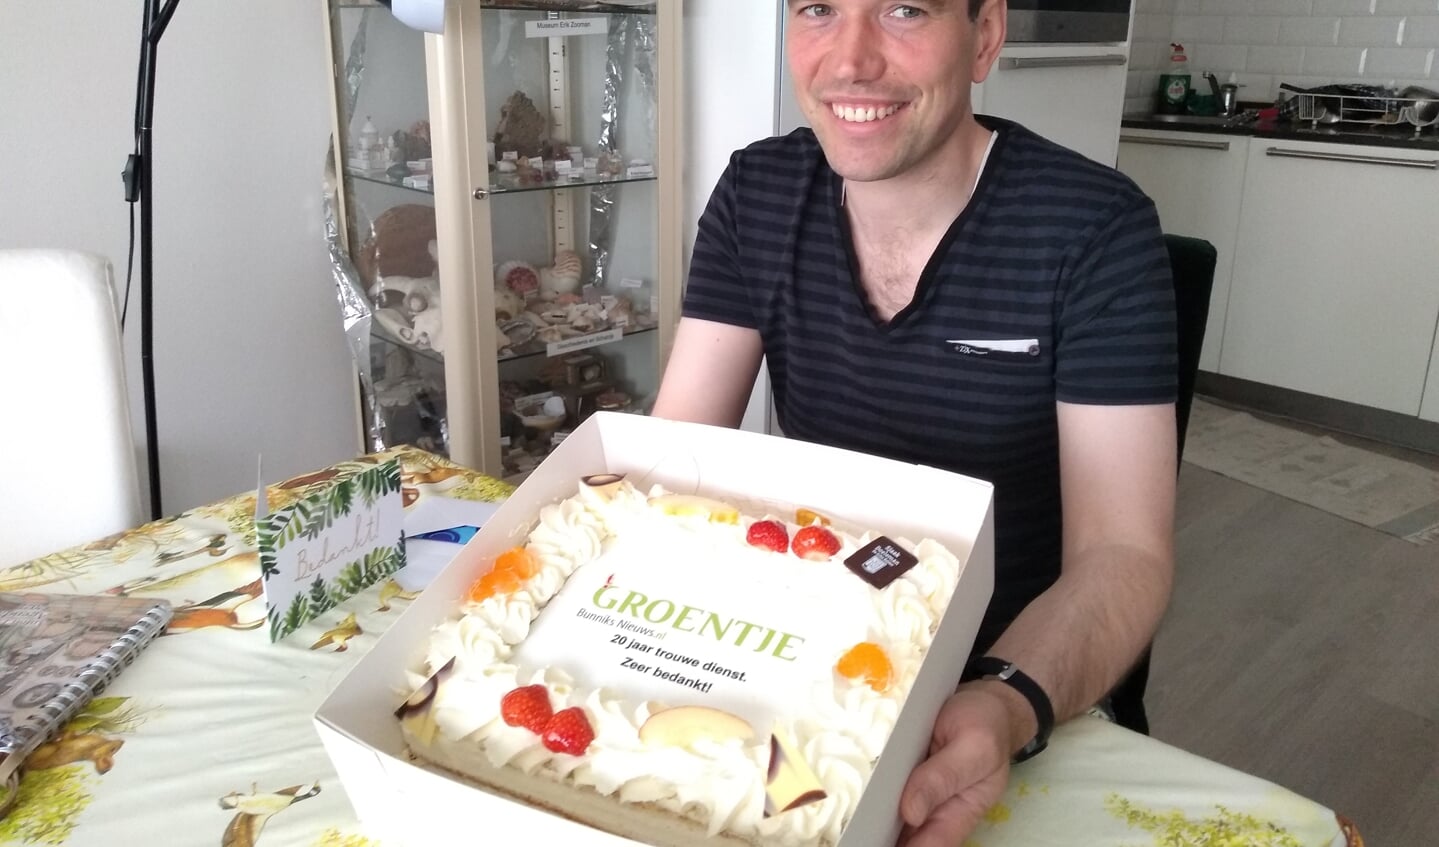 Krantenbezorger Erik Heikens werd verrast met een taart van Doeleman wegens zijn 20-jarige jubileum